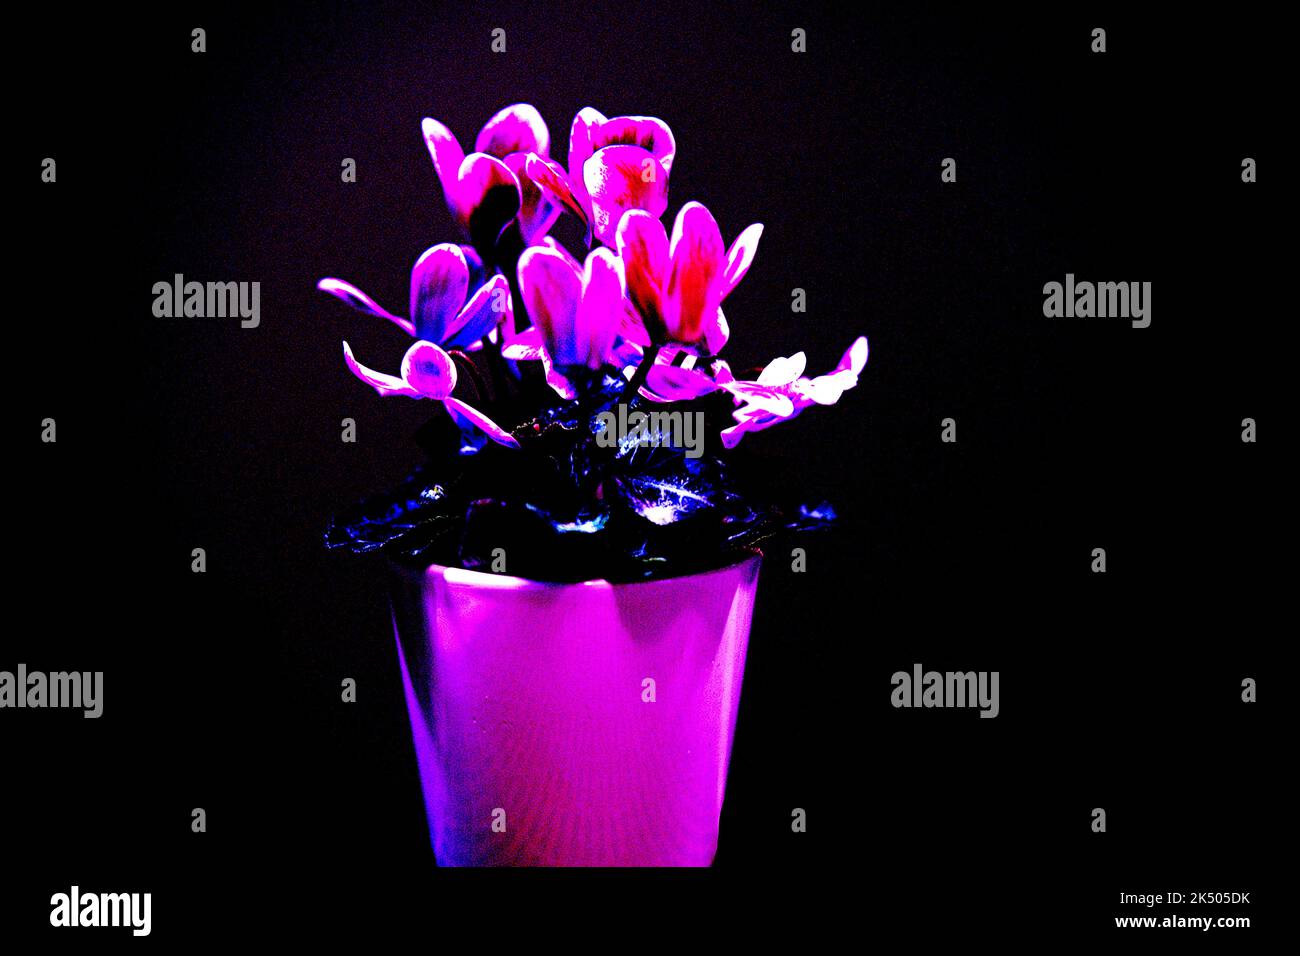 Alpenveilchen einzelner Blumenstock mit verschiedenen Farbnuacen grün, hellblau, blau, rosa, gosaschwarz, vielett, braun, Stock Photo